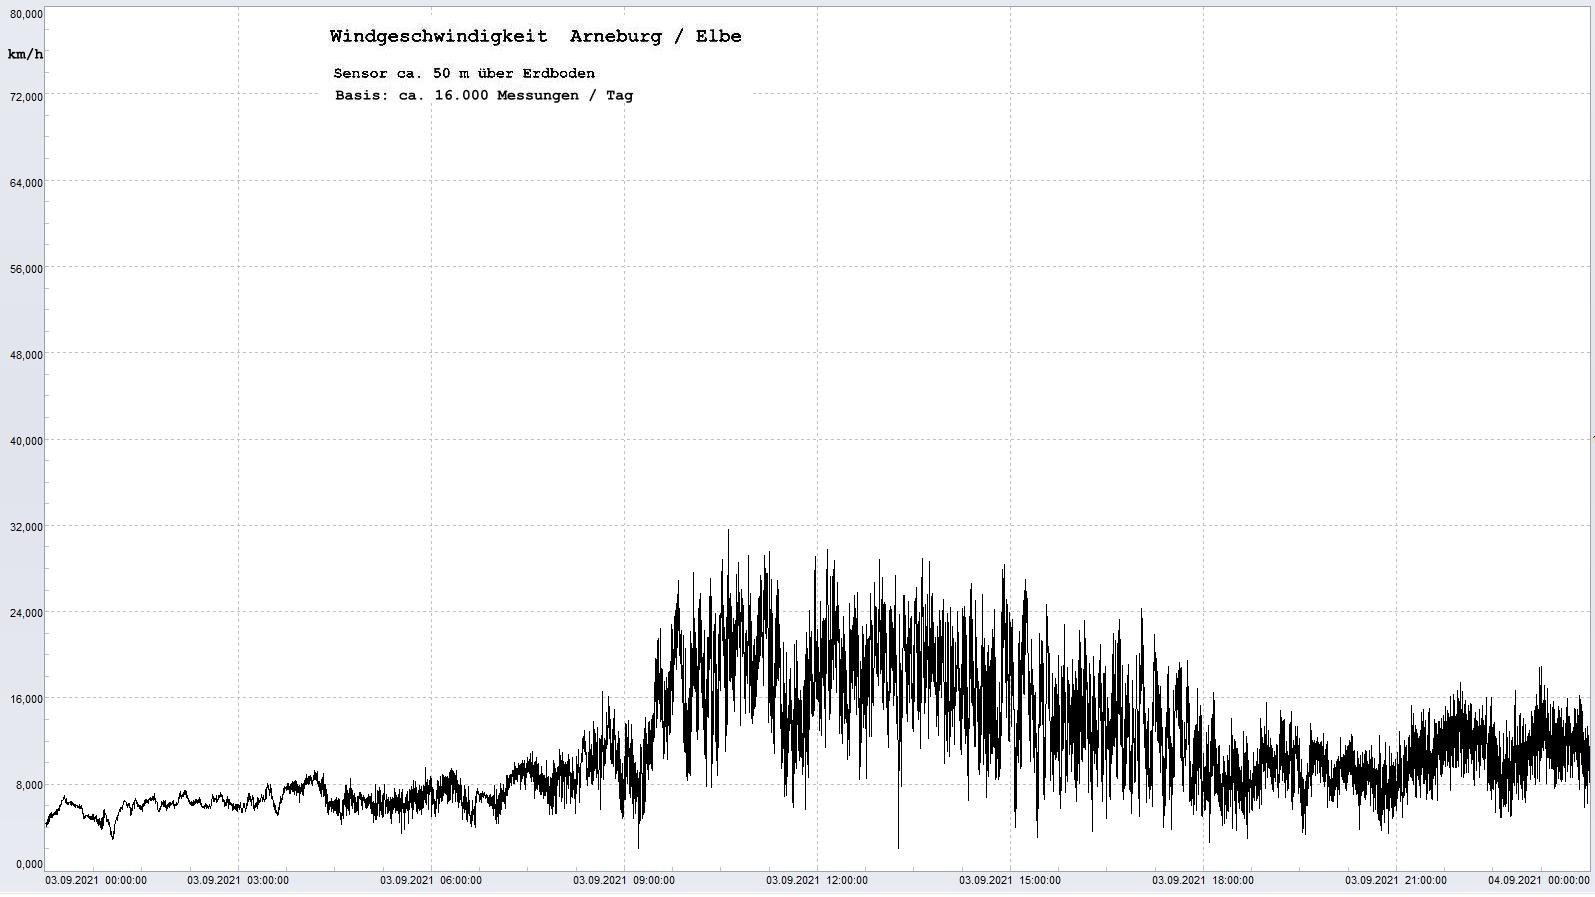 Arneburg Tages-Diagramm Winddaten, 03.09.2021
  Diagramm, Sensor auf Gebude, ca. 50 m ber Erdboden, Basis: 5s-Aufzeichnung